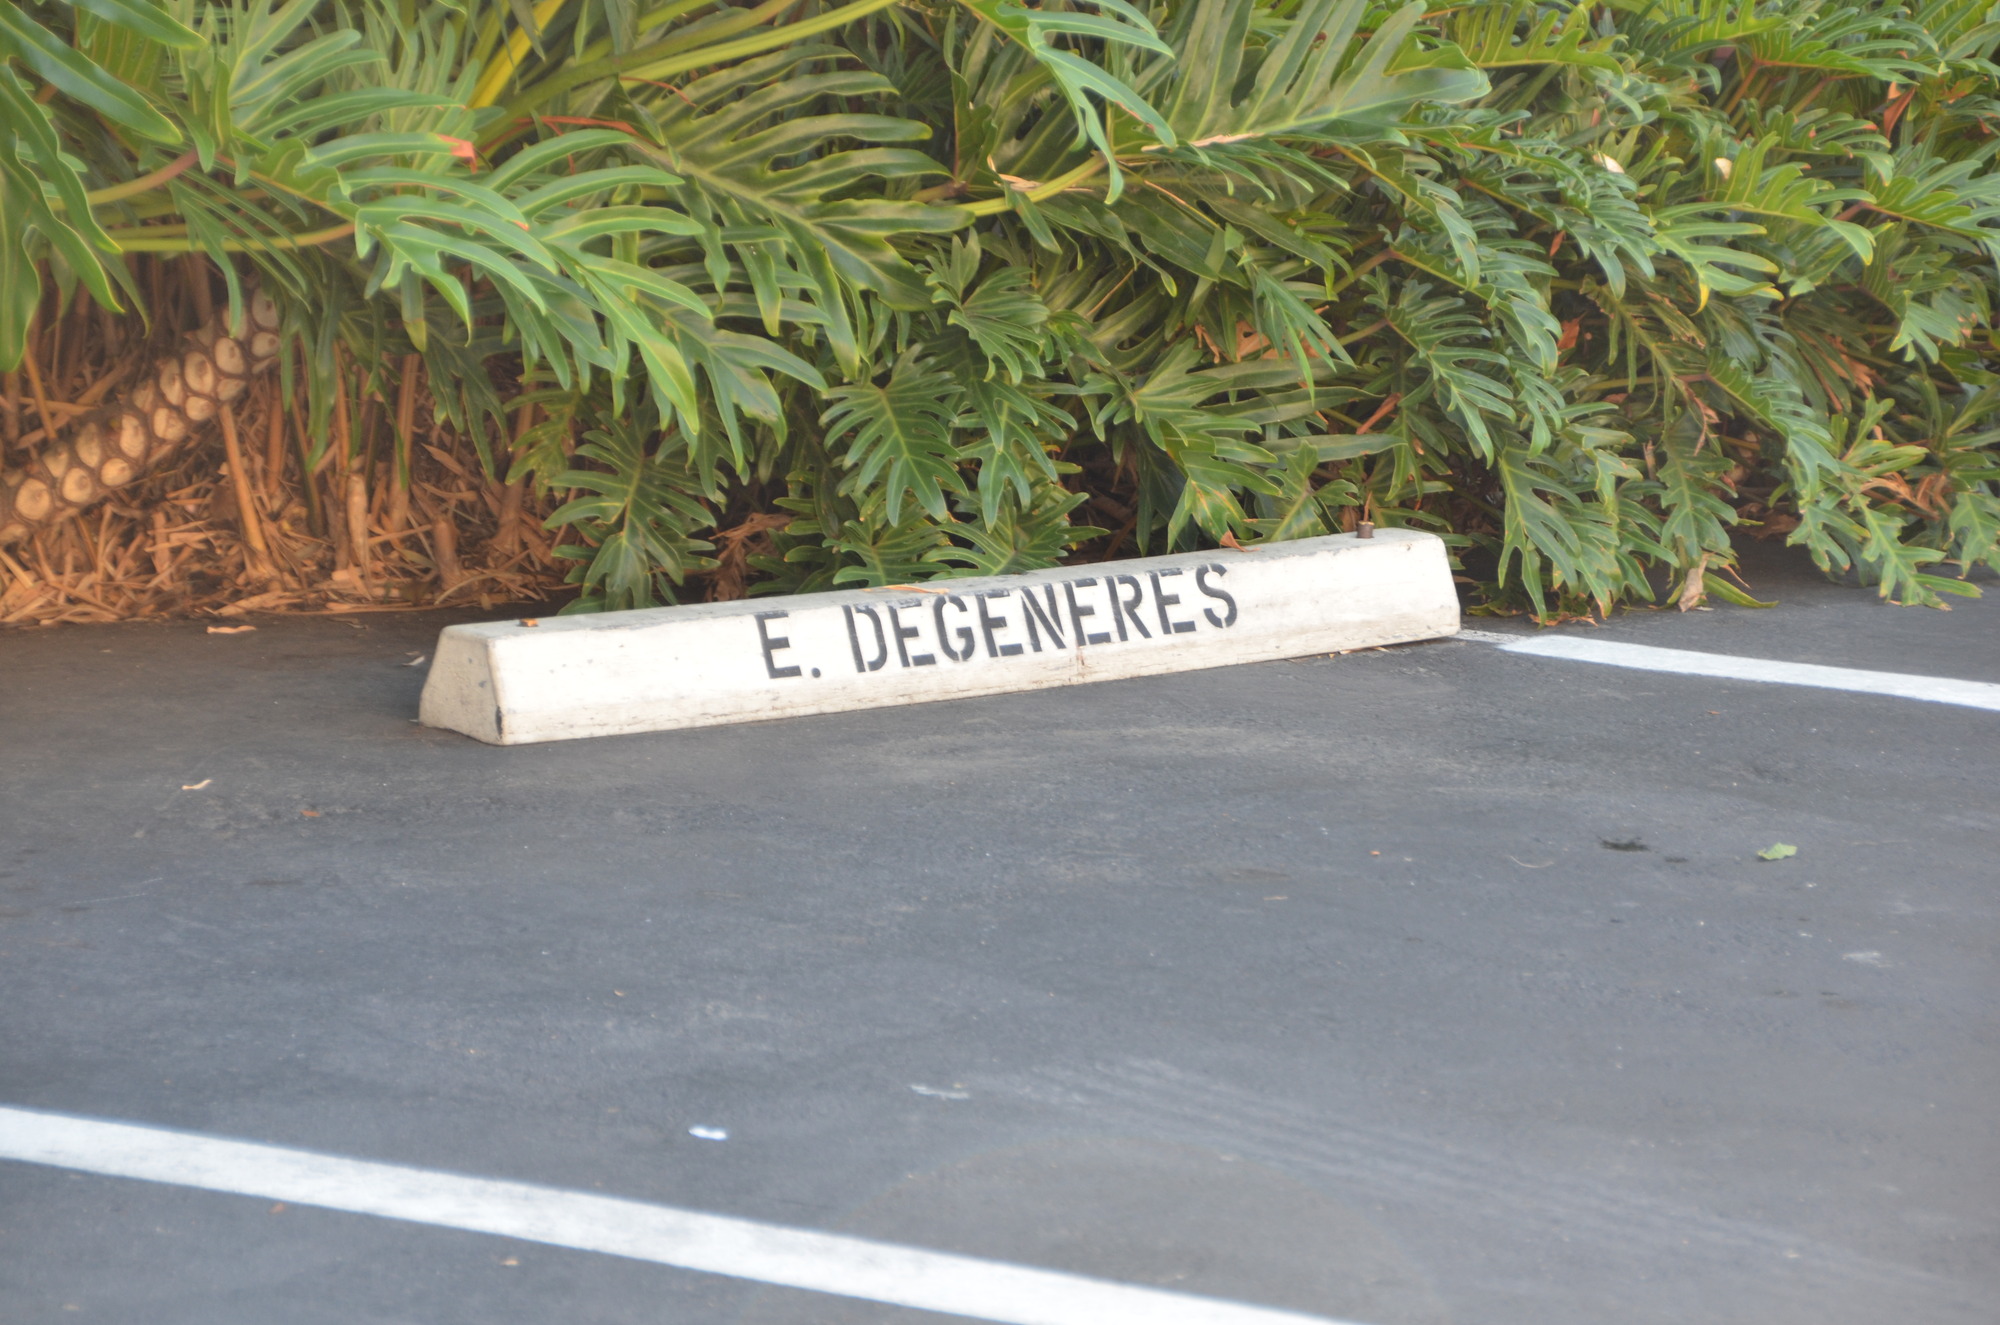 Ellen's parking spot